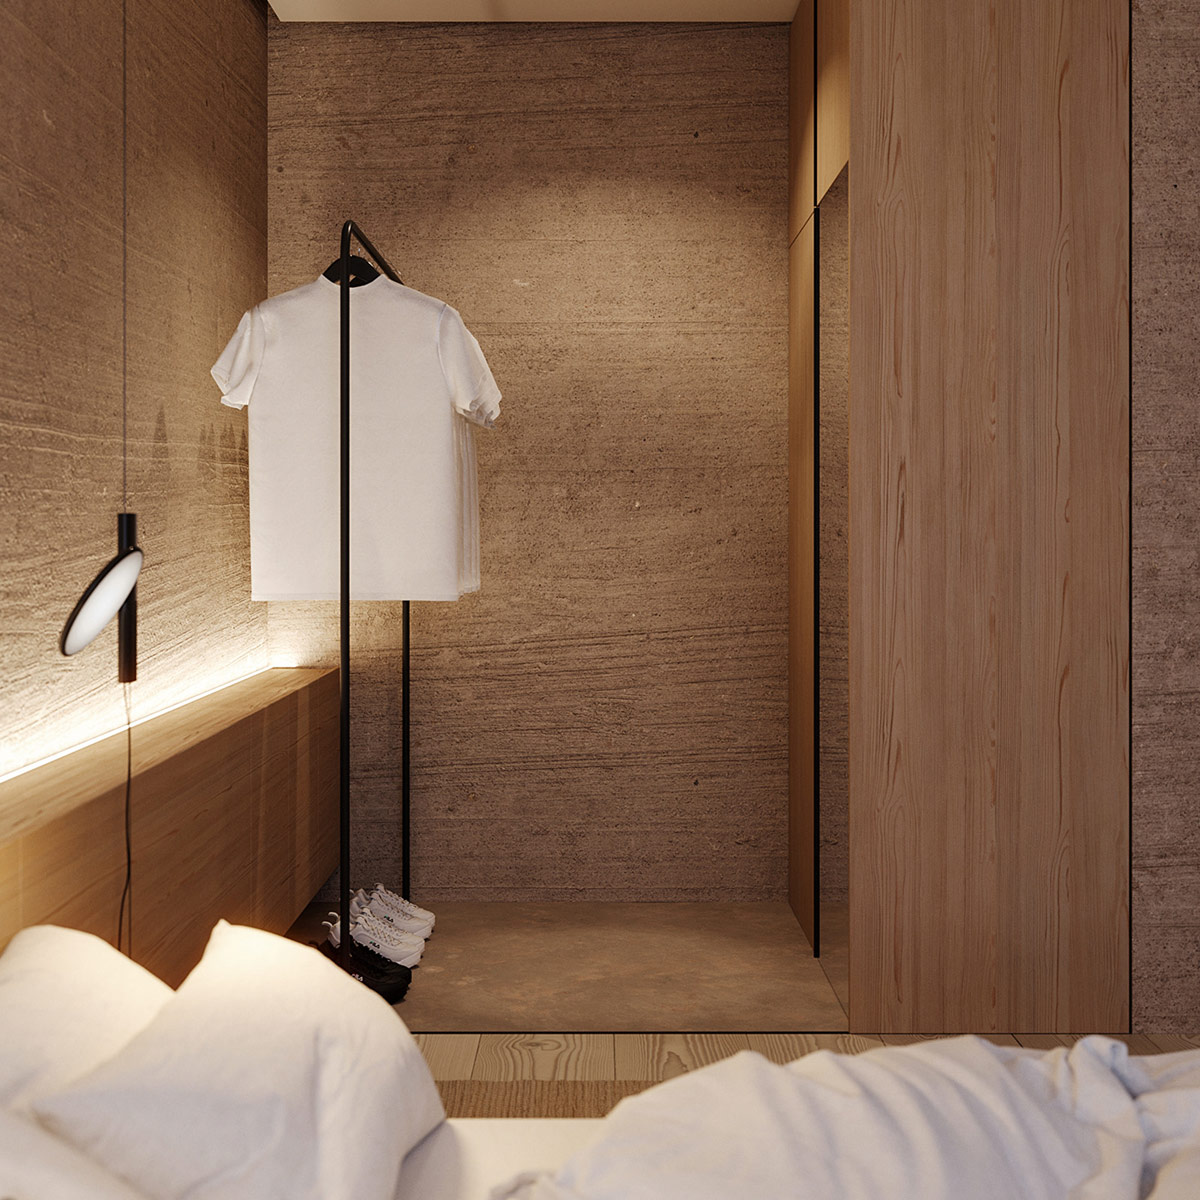 Mẫu thiết kế nội thất chung cư Eco Green với phòng ngủ tối giản ấm cúng